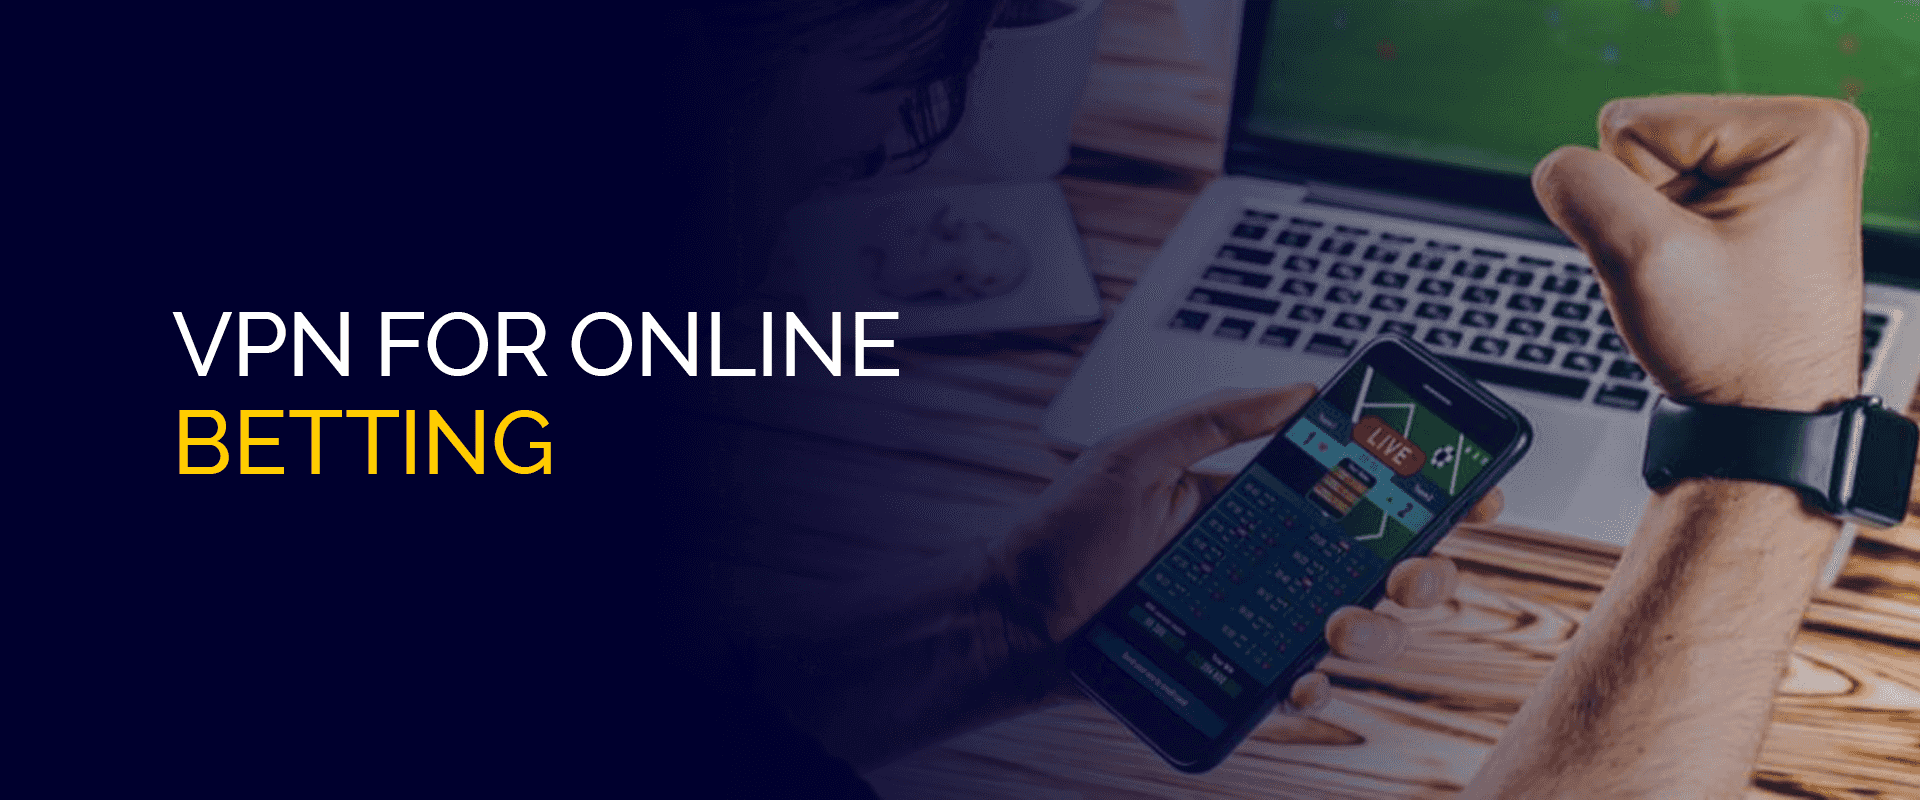 VPN for Online Betting